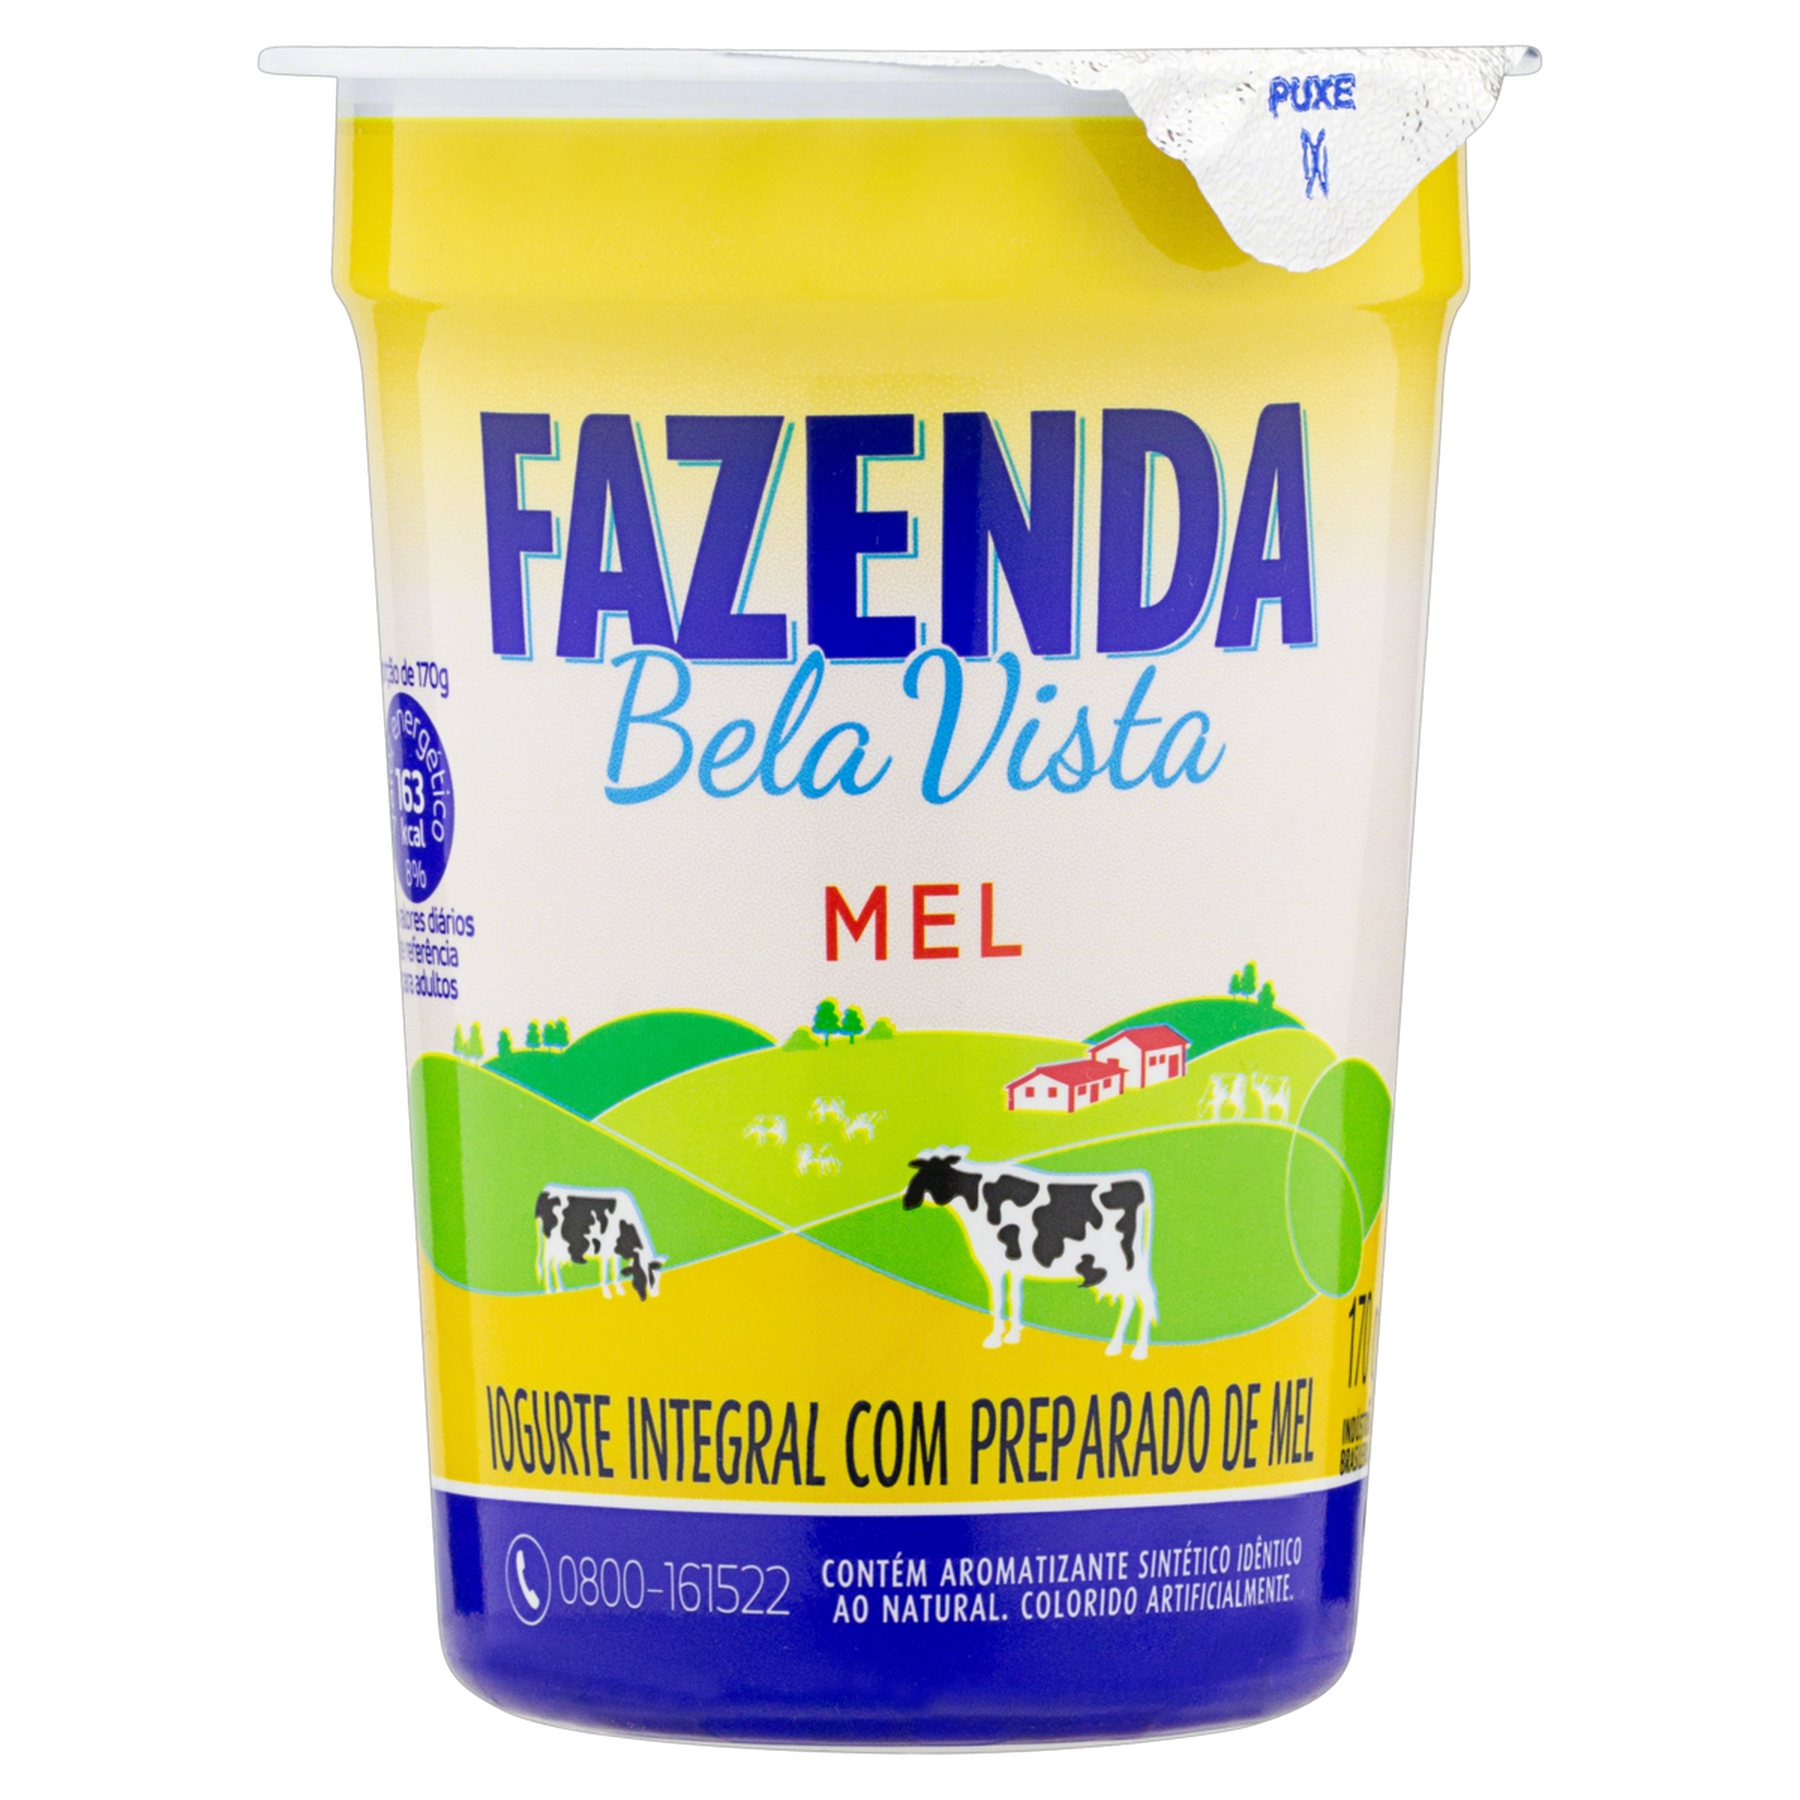 Iogurte Integral Mel Fazenda Bela Vista Copo 170g